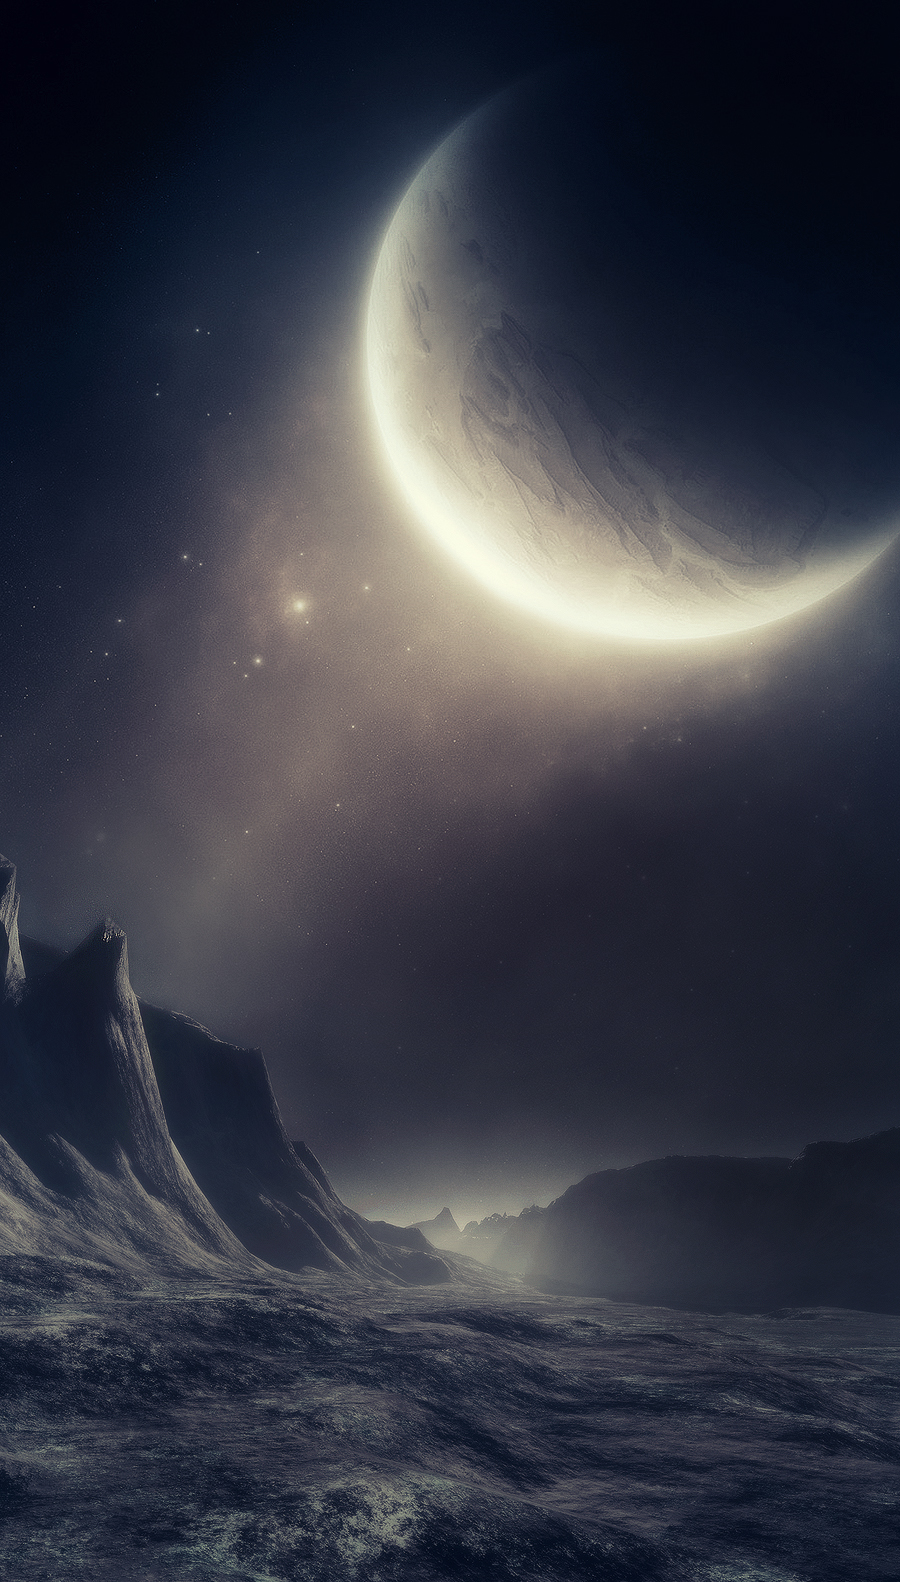 Moonrise - 2.Líbánky